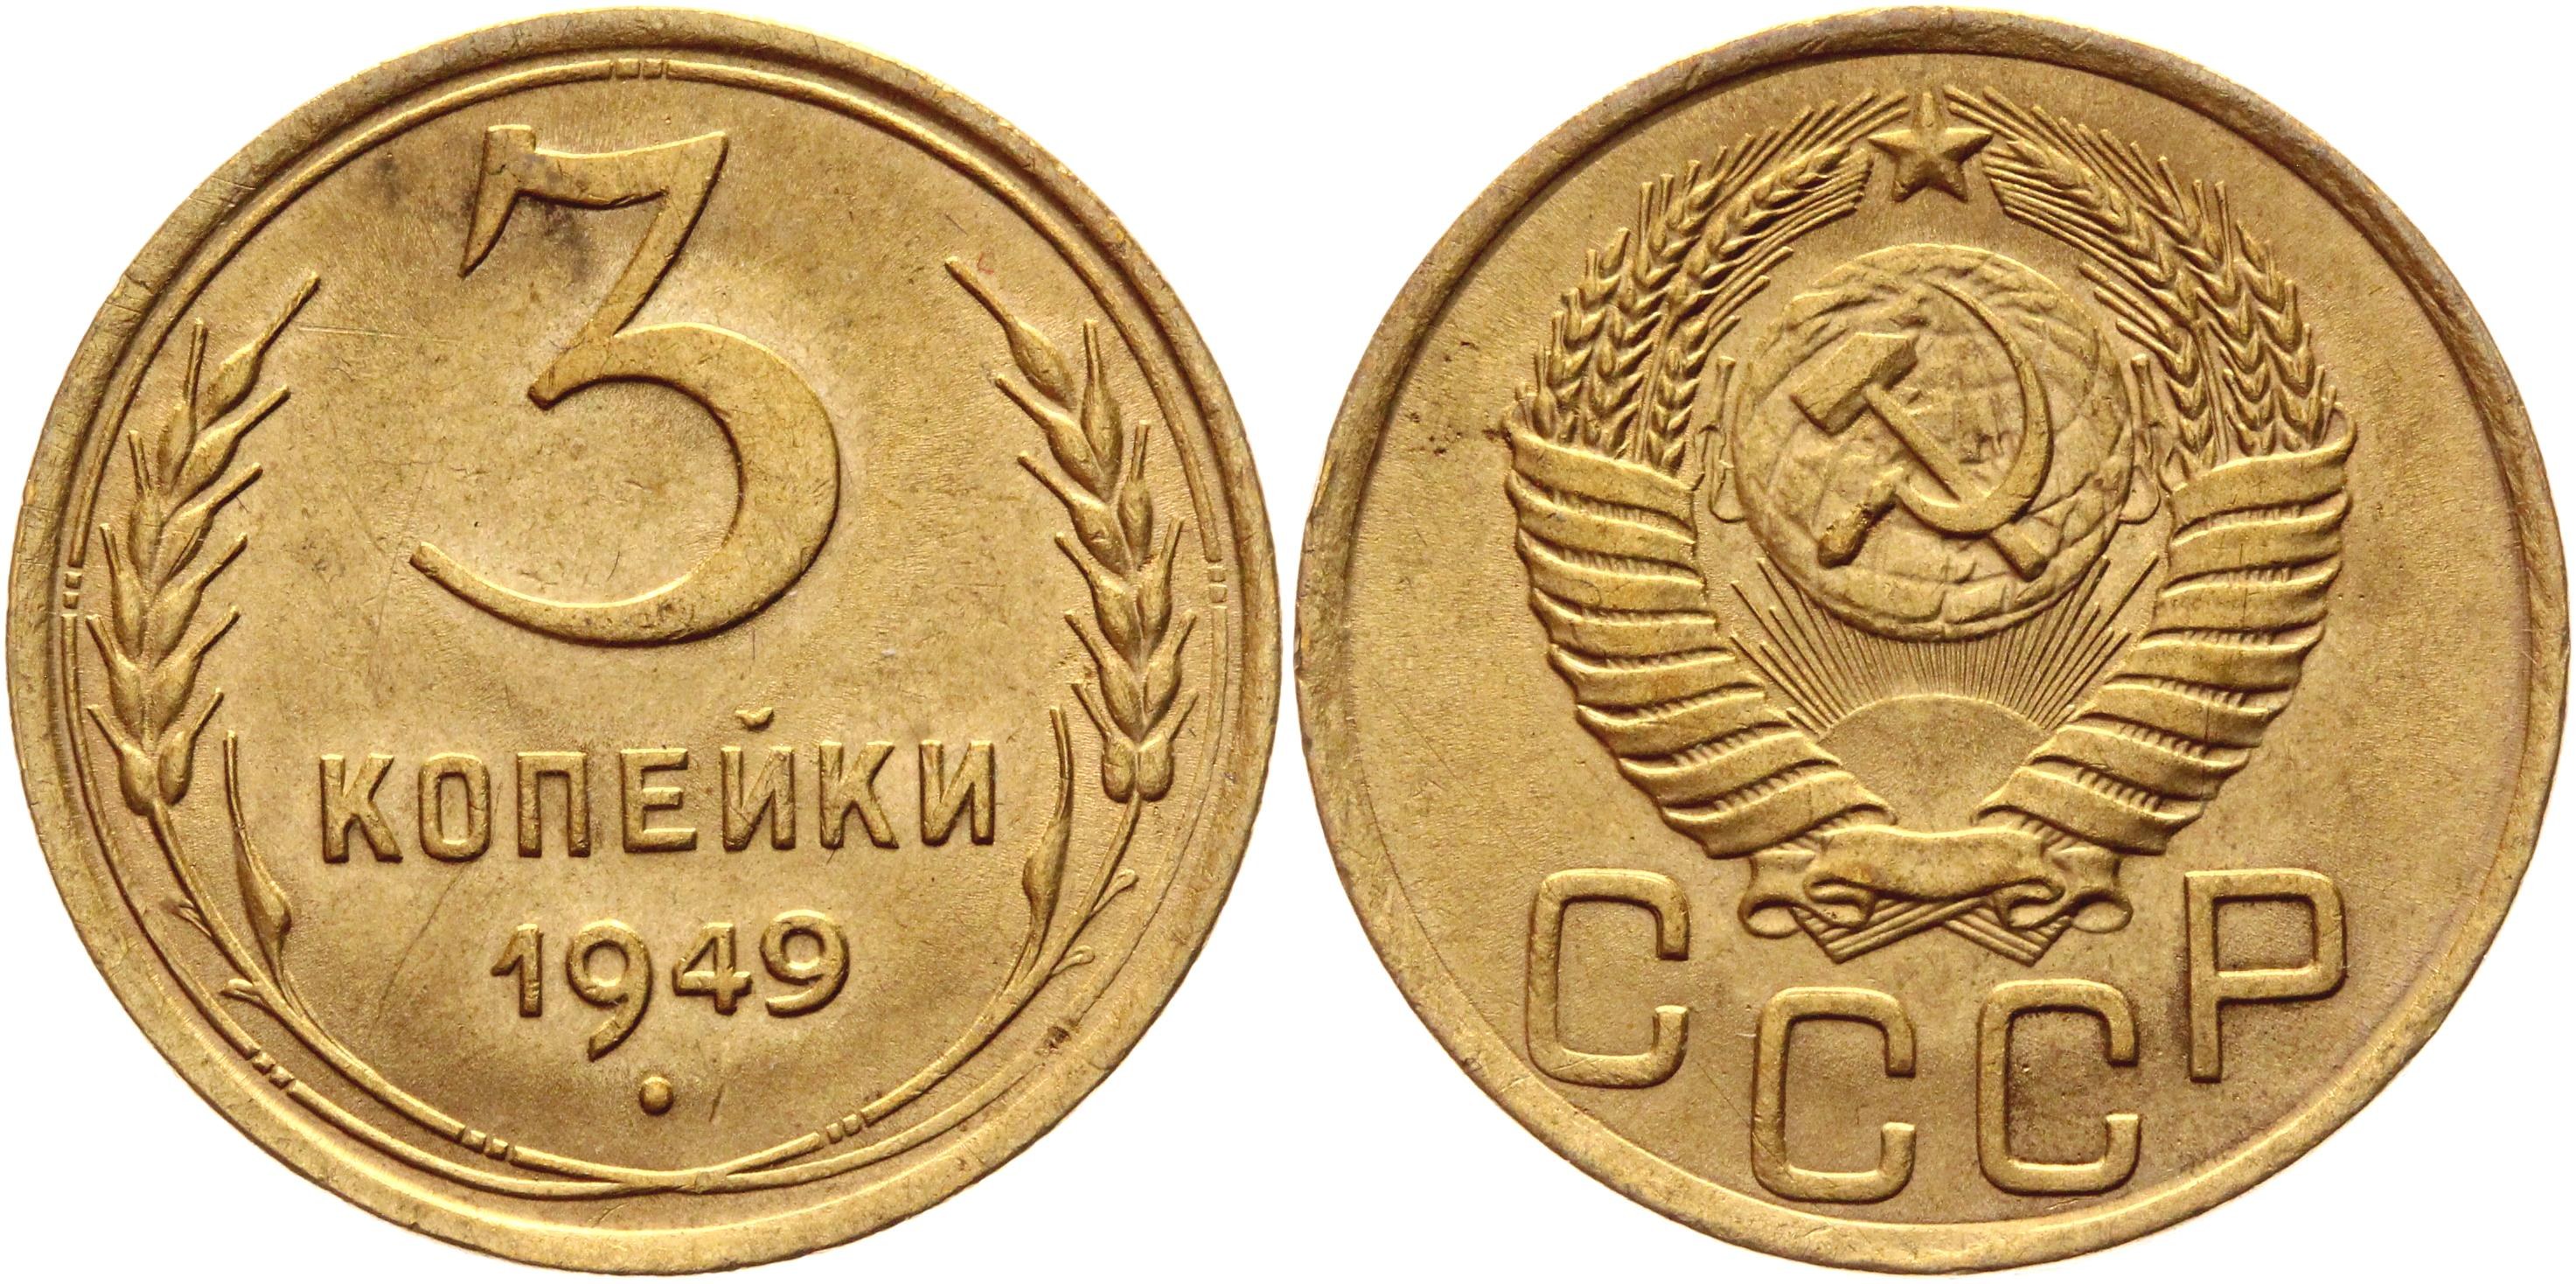 5 копеек 20. Советские пять копеек. 5 Копеек 1961 года. Редкие монеты СССР 5 копеек. Изображение монеты 5 копеек 1961 года.